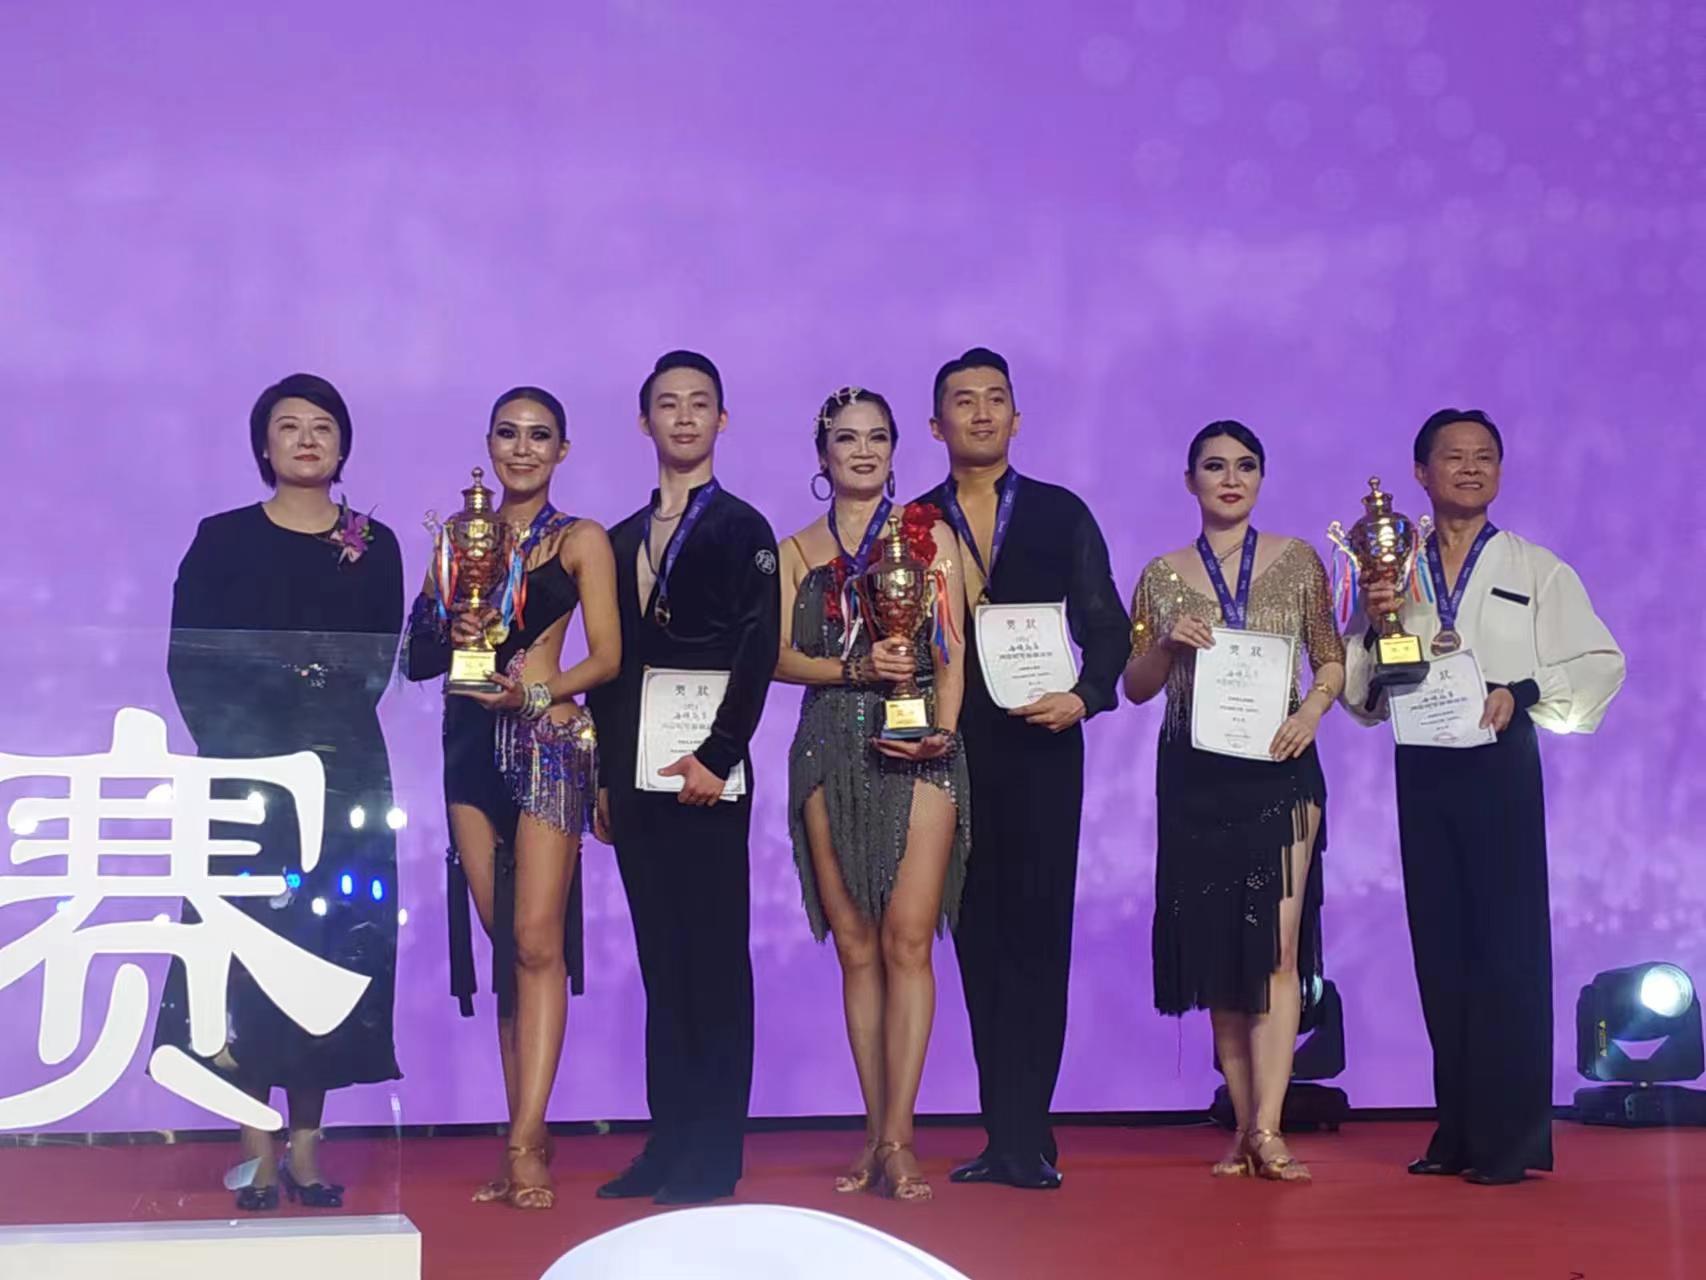 2024海峡两岸国际标准舞联谊赛于21日在上海前滩香格里拉大酒店举办。组别比赛结束后举行颁奖典礼。（记者黄雅慧／摄影）